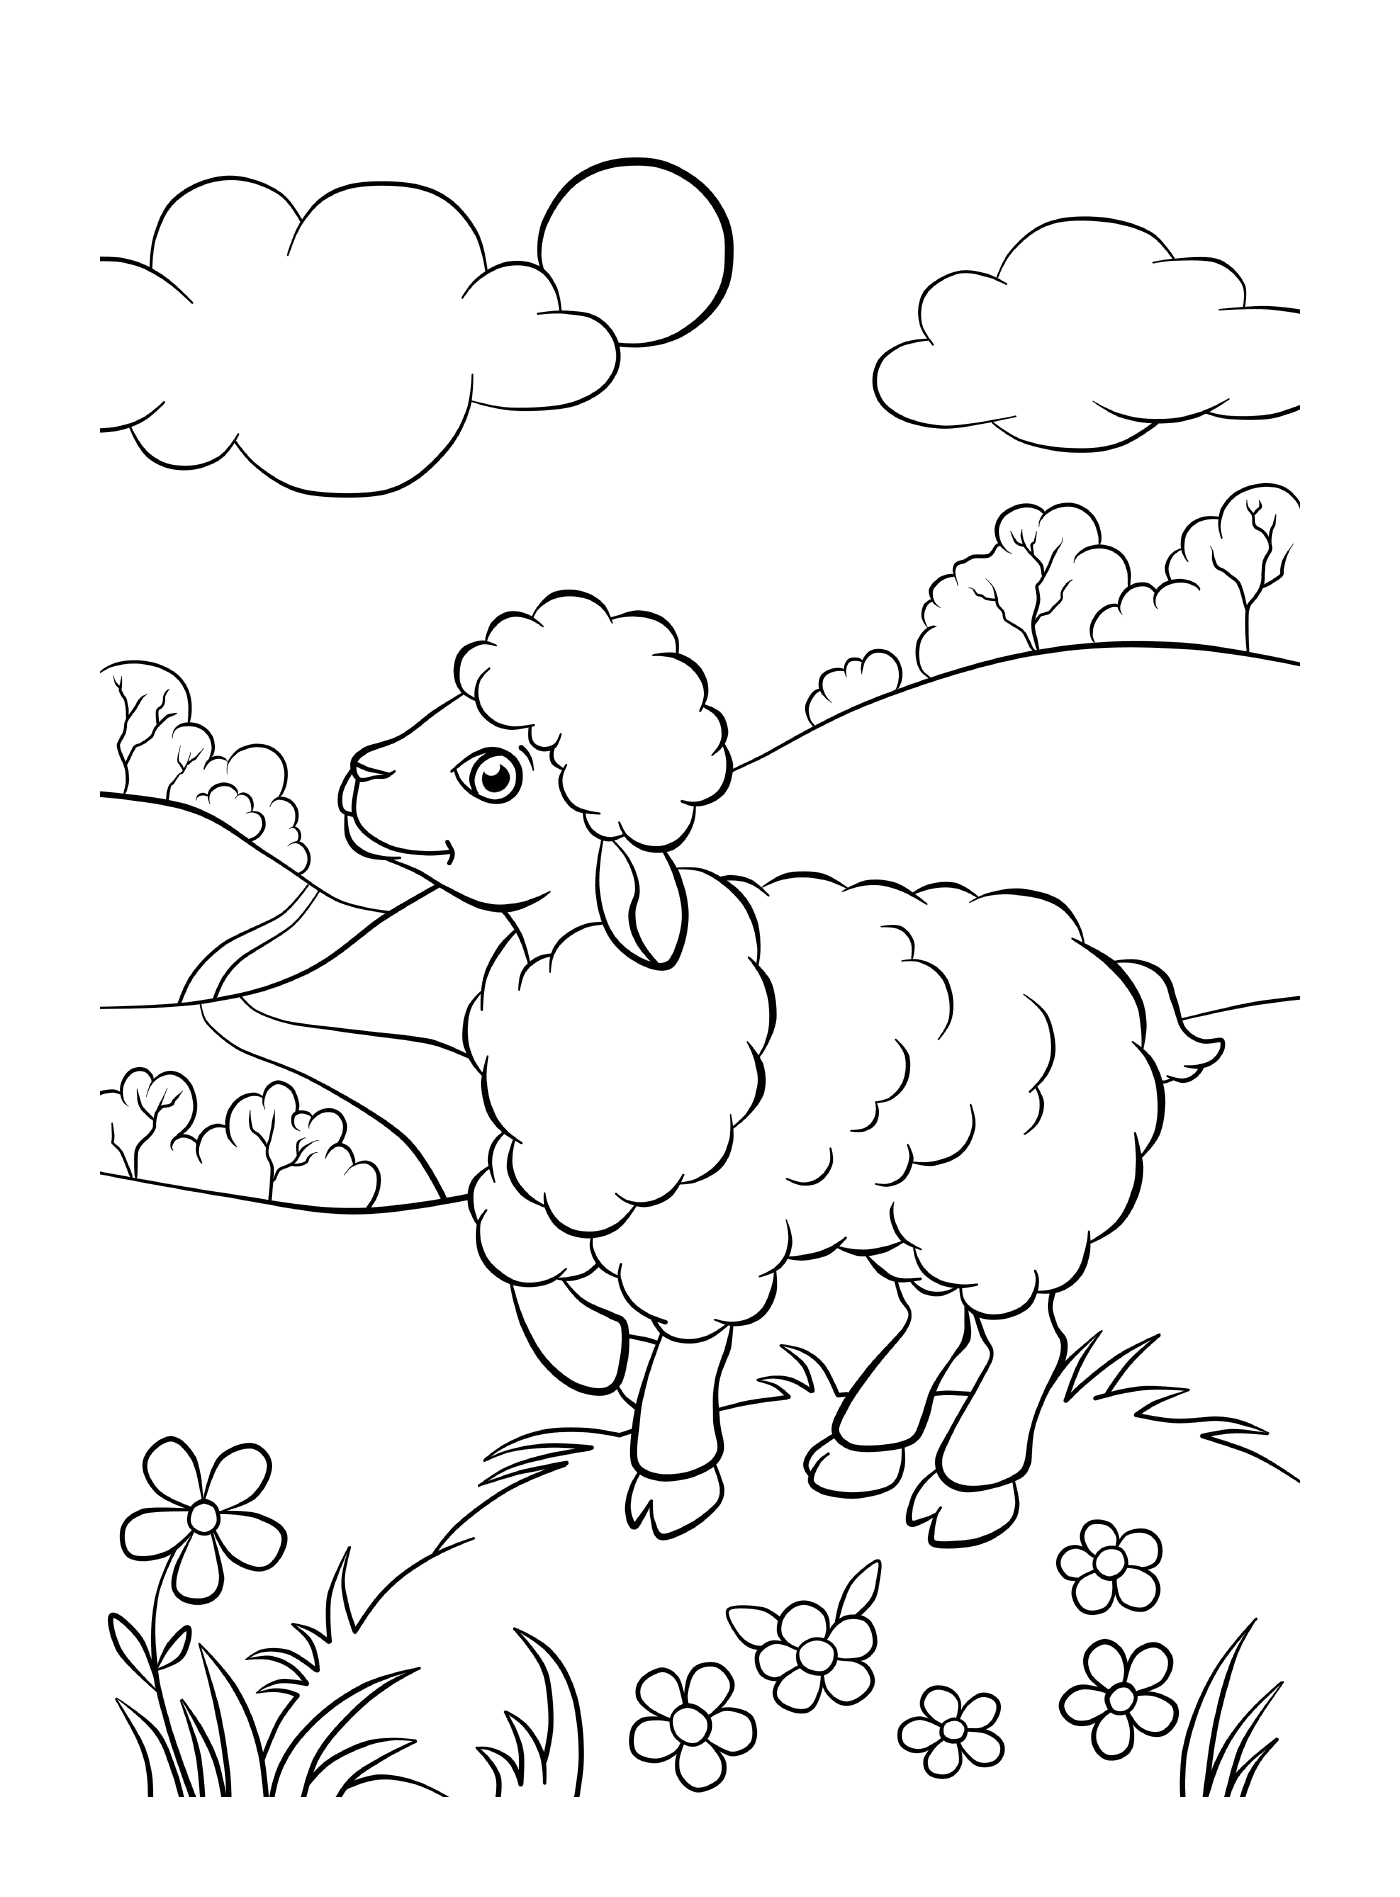  Pecore in campi verdi 